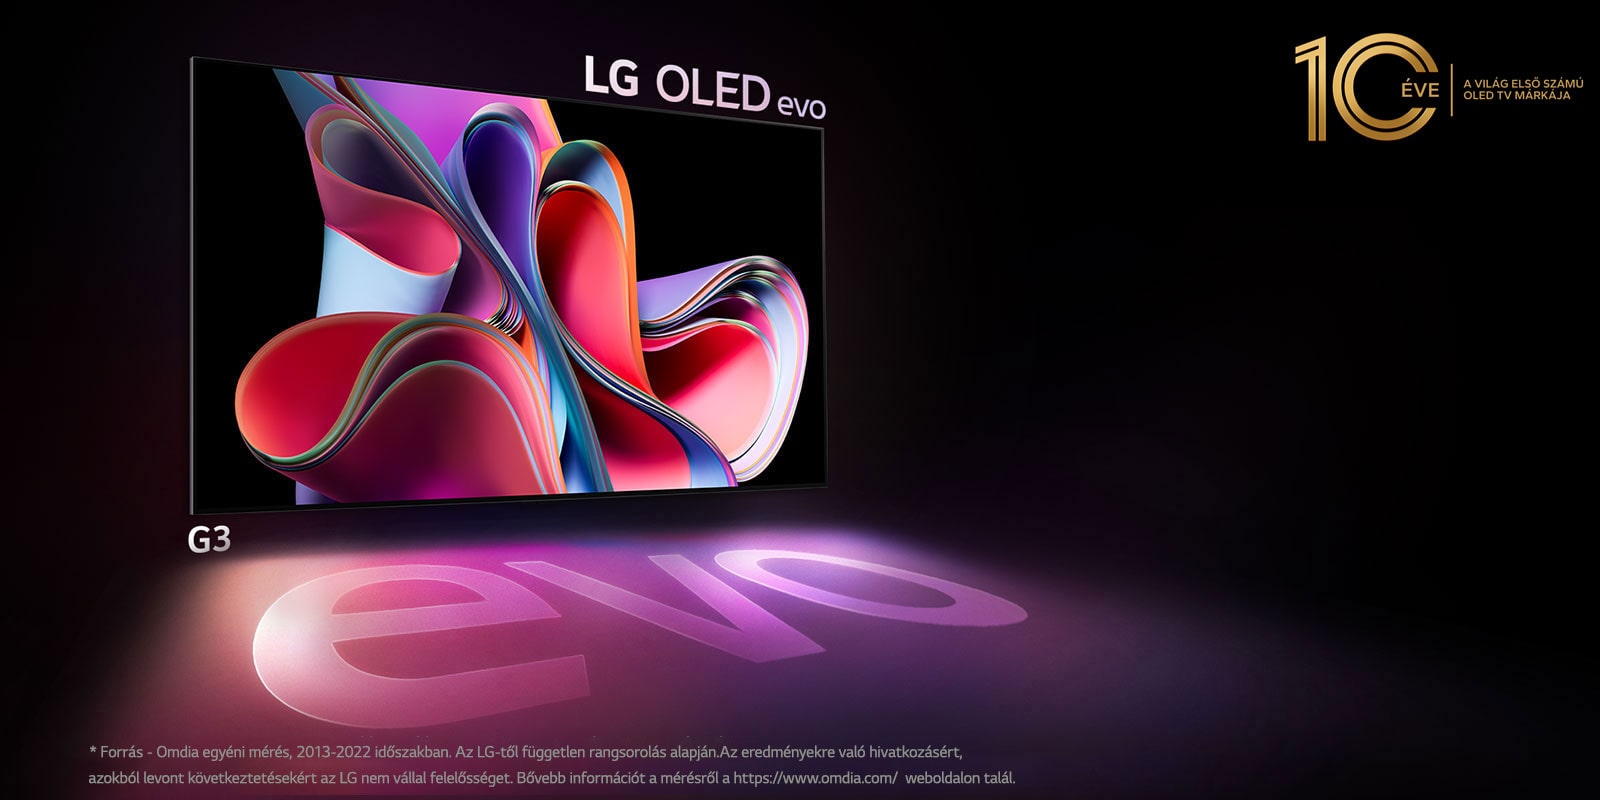 Az LG OLED G3 képe fekete háttér előtt rózsaszín és lila, absztrakt műalkotásokkal. A kijelző színes árnyékot vet, melyen az „evo” szó olvasható. A „10 Years World's No.1 OLED TV” (10 éve a világ első számú OLED TV-je) embléma látható a kép bal felső sarkában. 